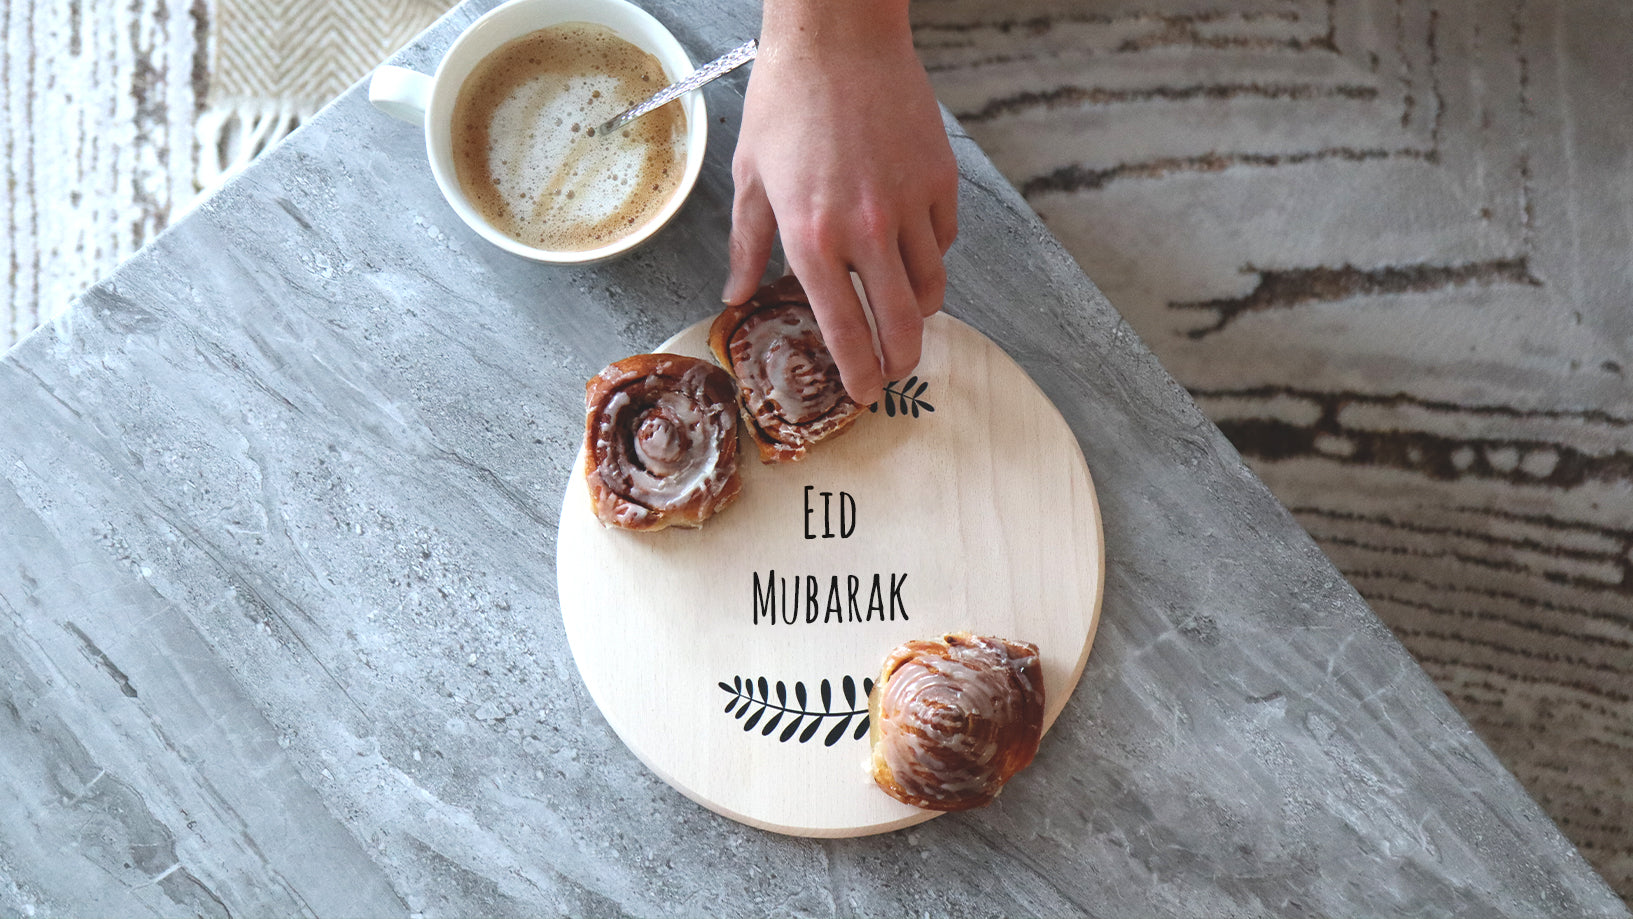 Vier Ramadan en Eid met betekenisvolle gepersonaliseerde cadeaus